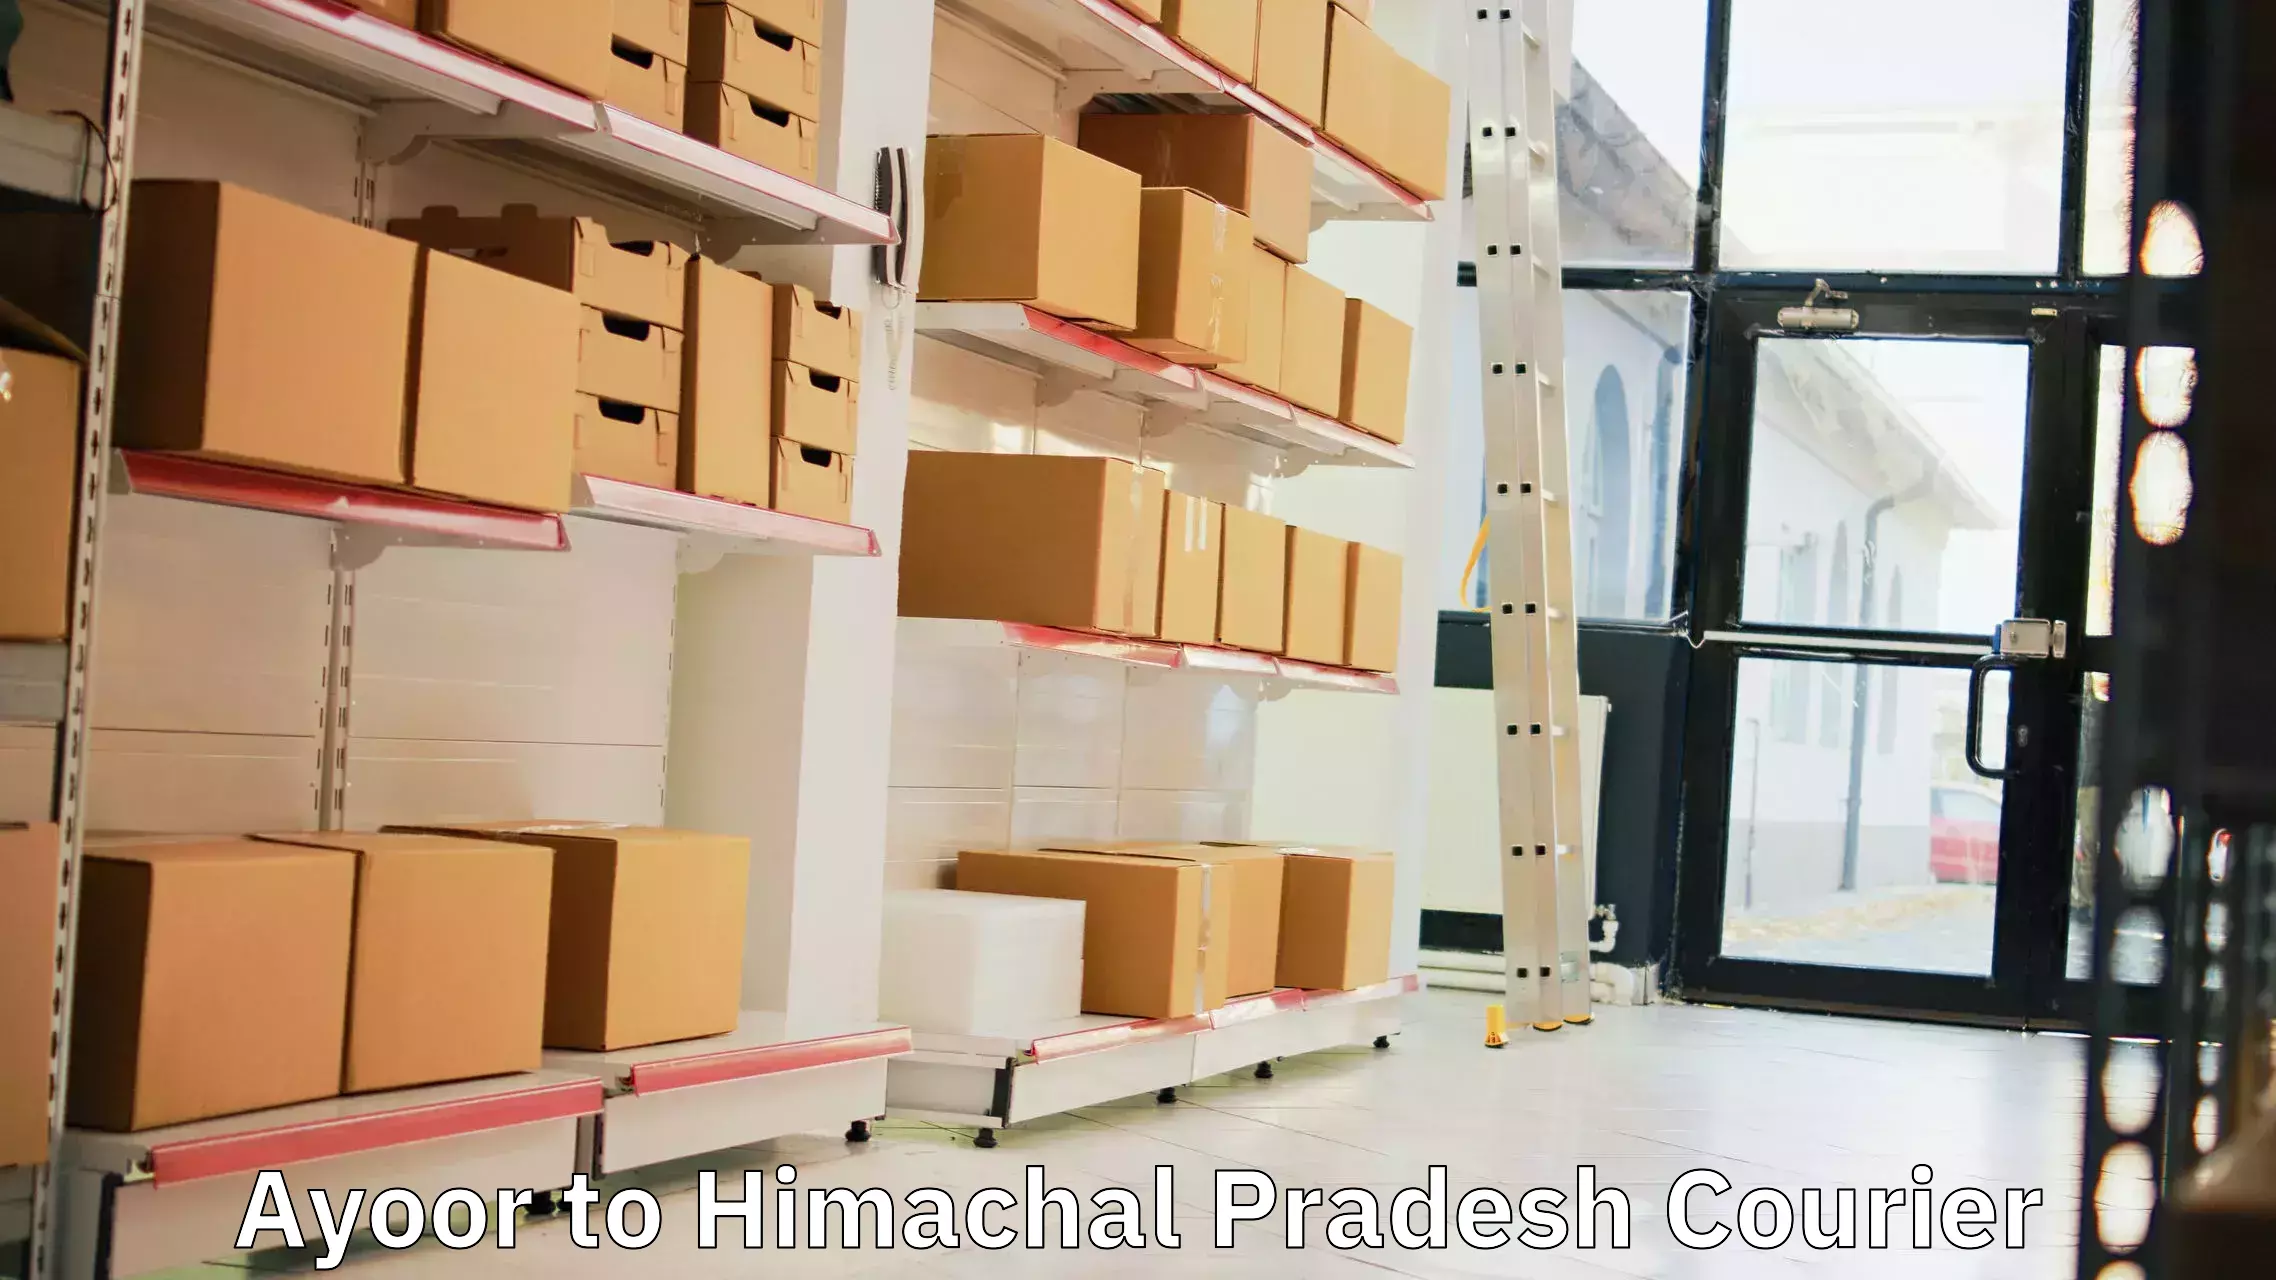 Nationwide parcel services Ayoor to Una Himachal Pradesh